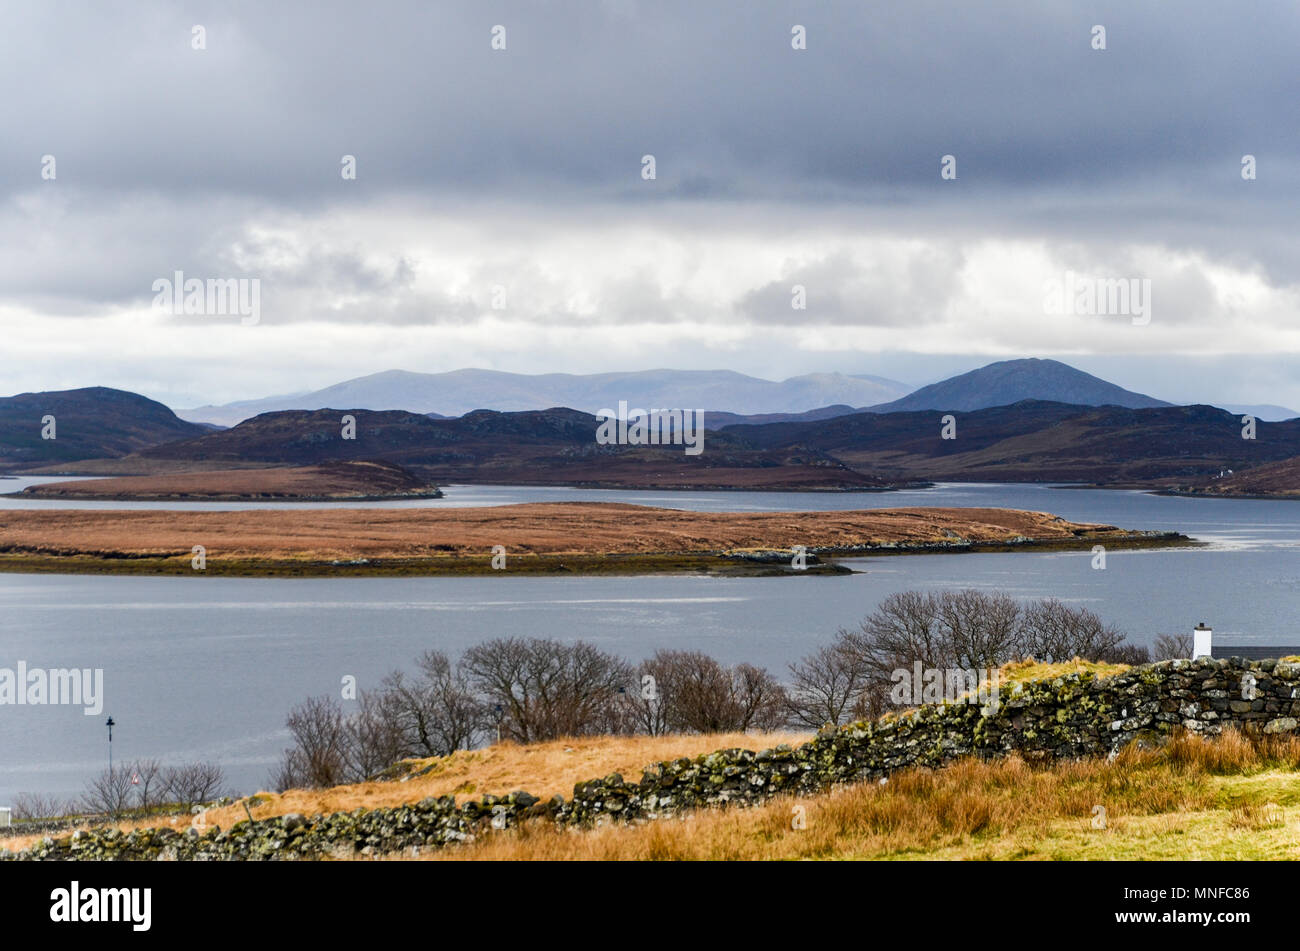 Paesaggio nelle Ebridi Esterne nei pressi di Callanish. La popolazione locale chiama la sua "bellezza dormiente" in inglese o "Cailleach na Mointeach' in gaelico. Foto Stock